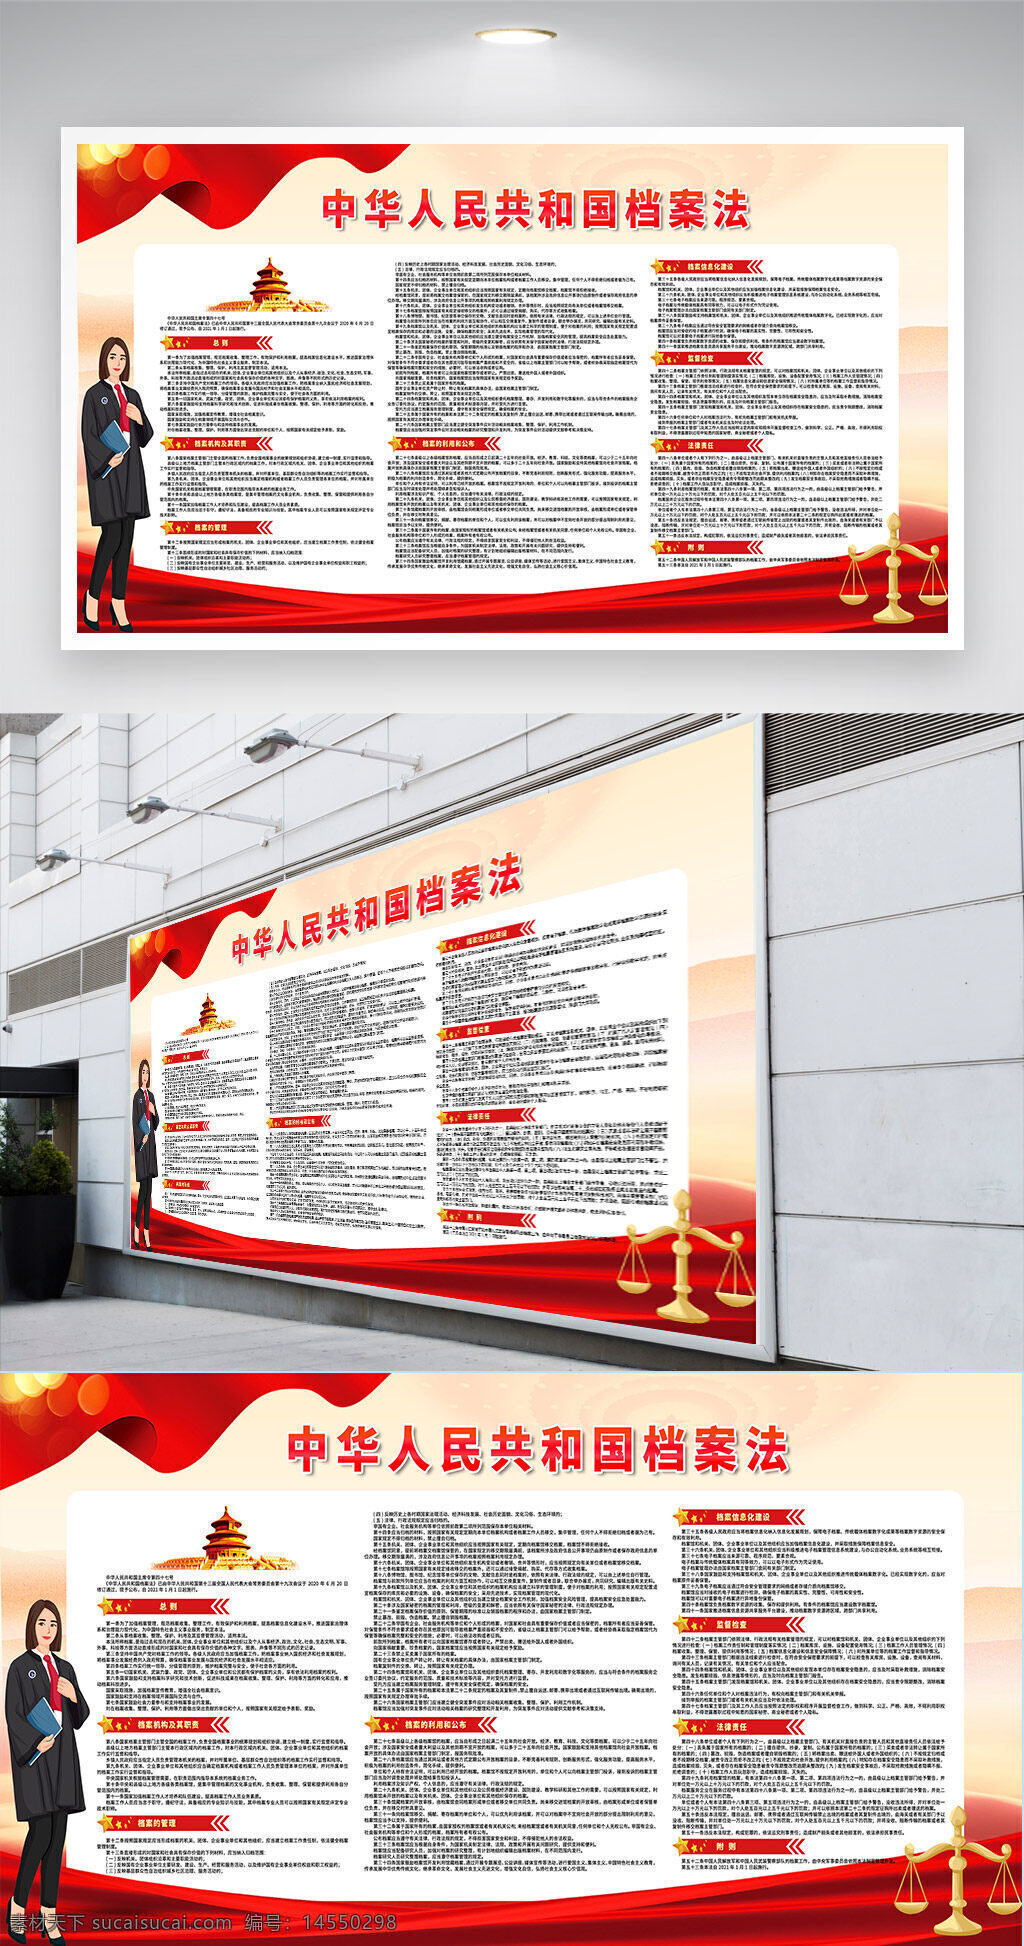 中华人民共和国档案法展板 档案法 中华人民共和国档案法 档案法展板 展板 档案